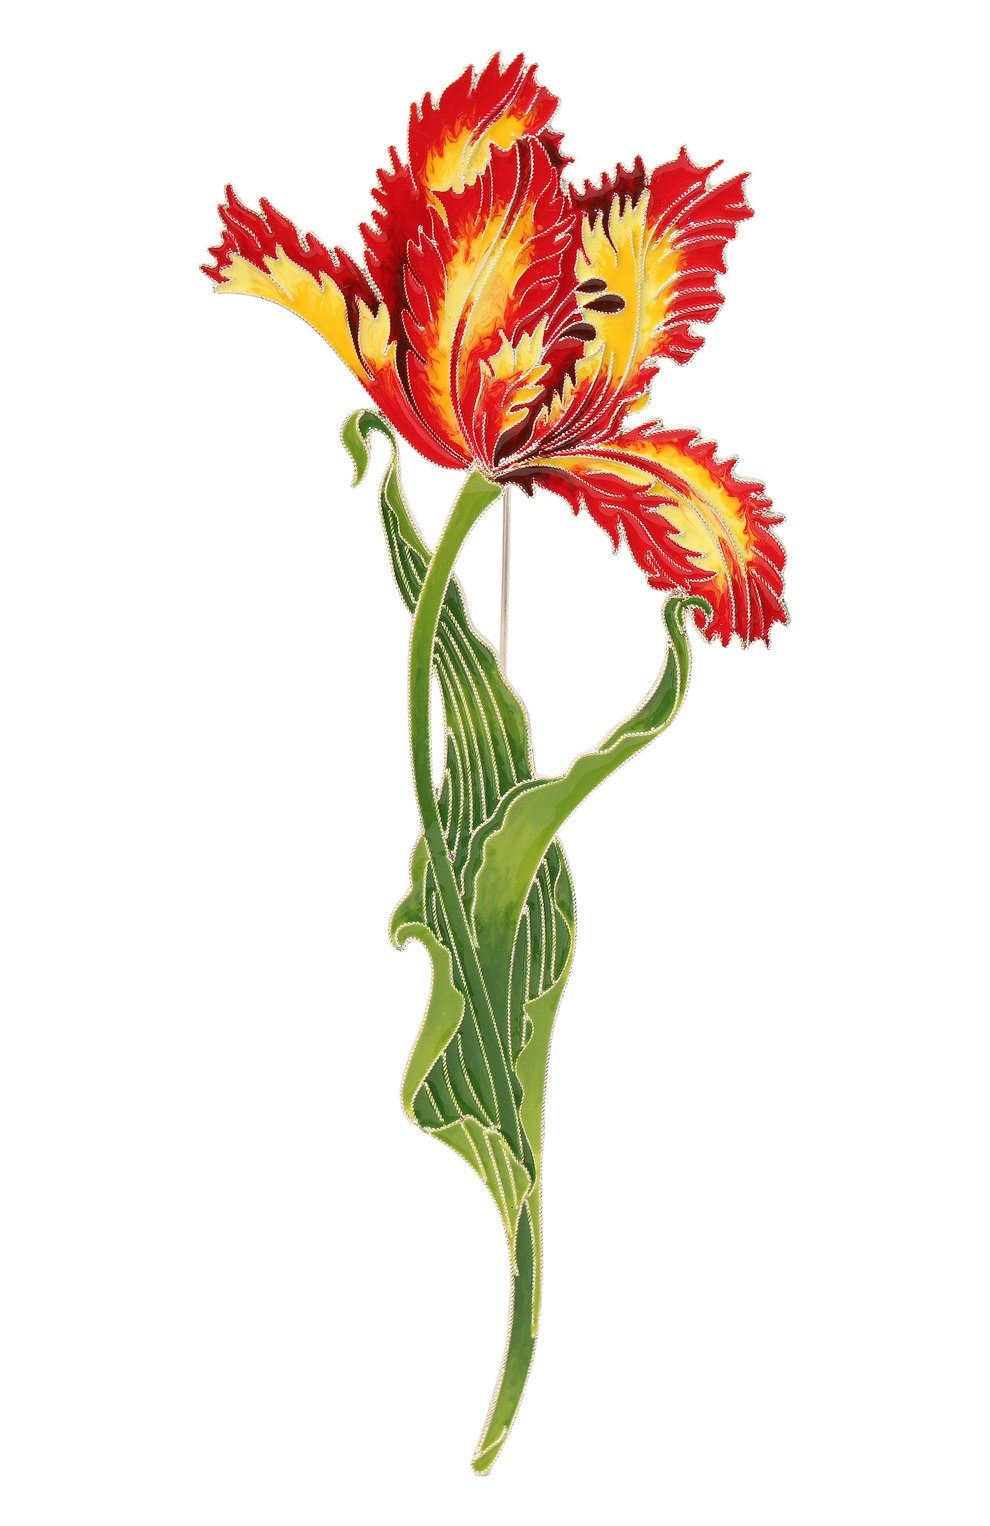 Женская брошь елагинский тюльпан РУССКИЕ САМОЦВЕТЫ разноцветного цве та, арт. 41606 | Фото 1 (Материал: Серебро)